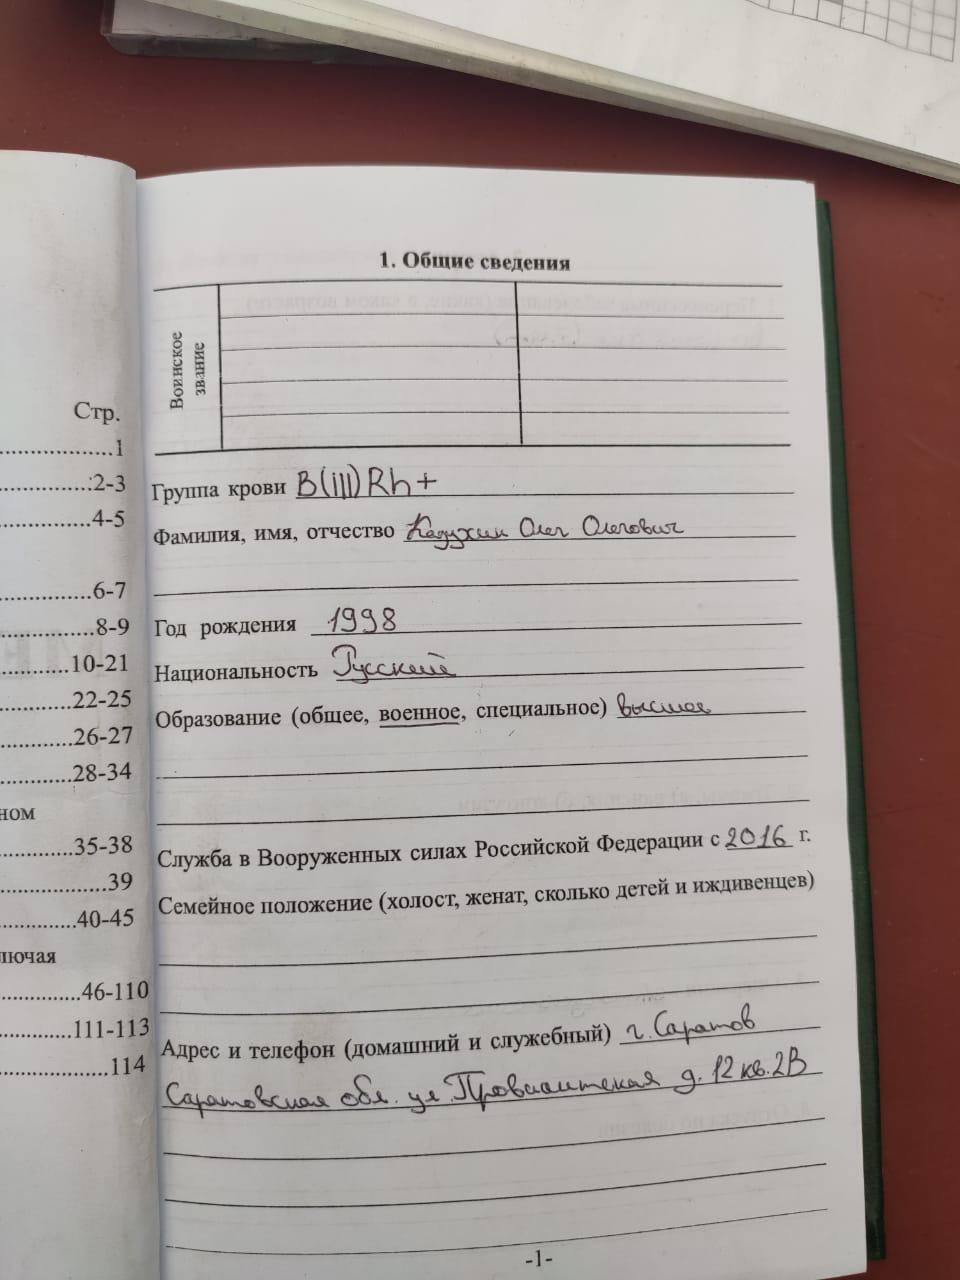 В Черниговской области захватили документы врага